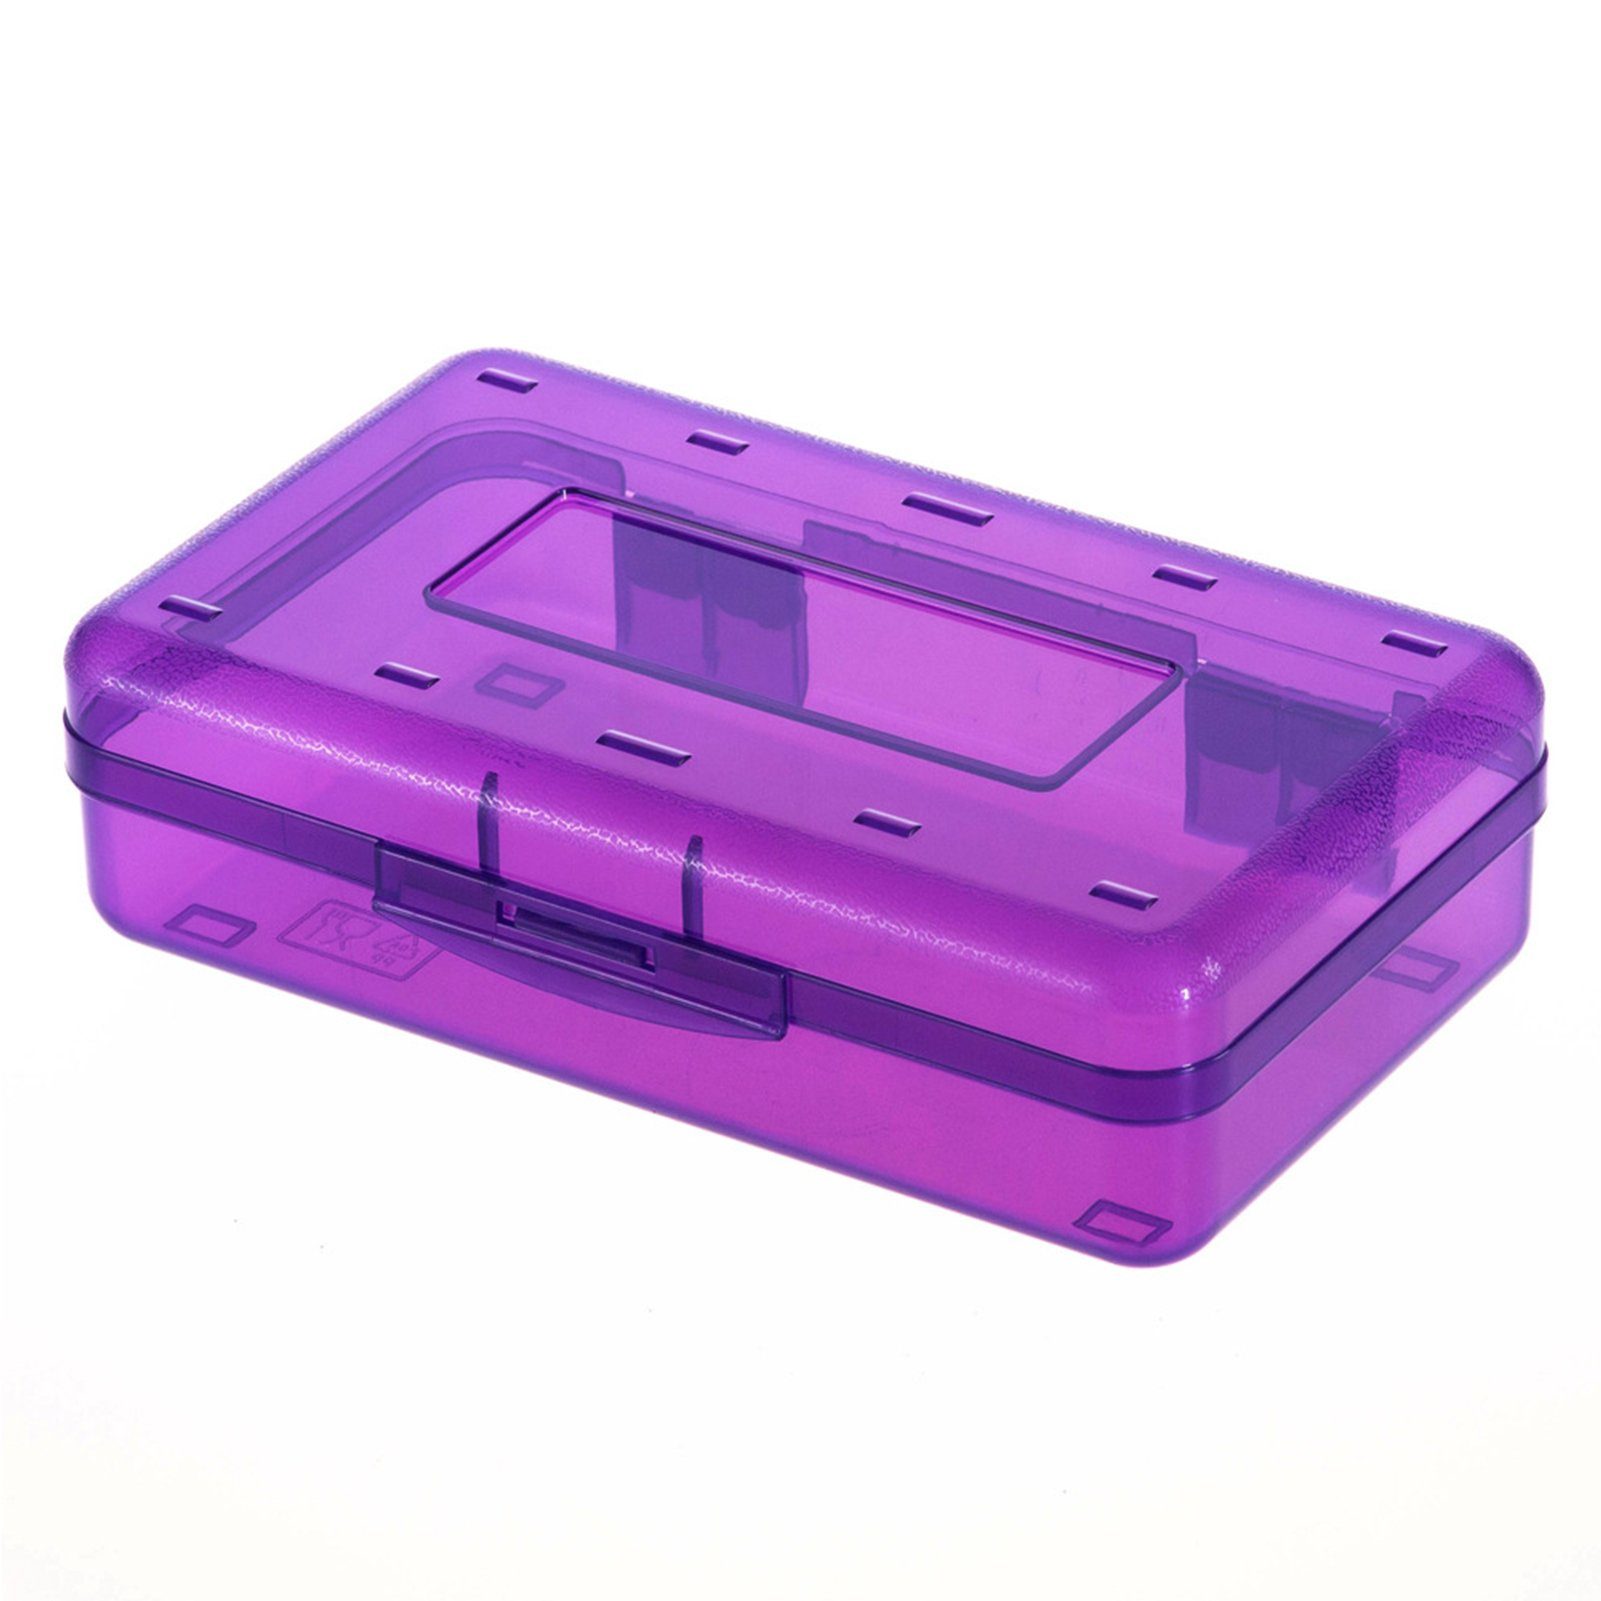 - Produktverkäufe Blusmart Federtasche transparent Tragbare Bleistifttasche Schöne Bleistiftbox, purple Federtasche, Transparente/bunte